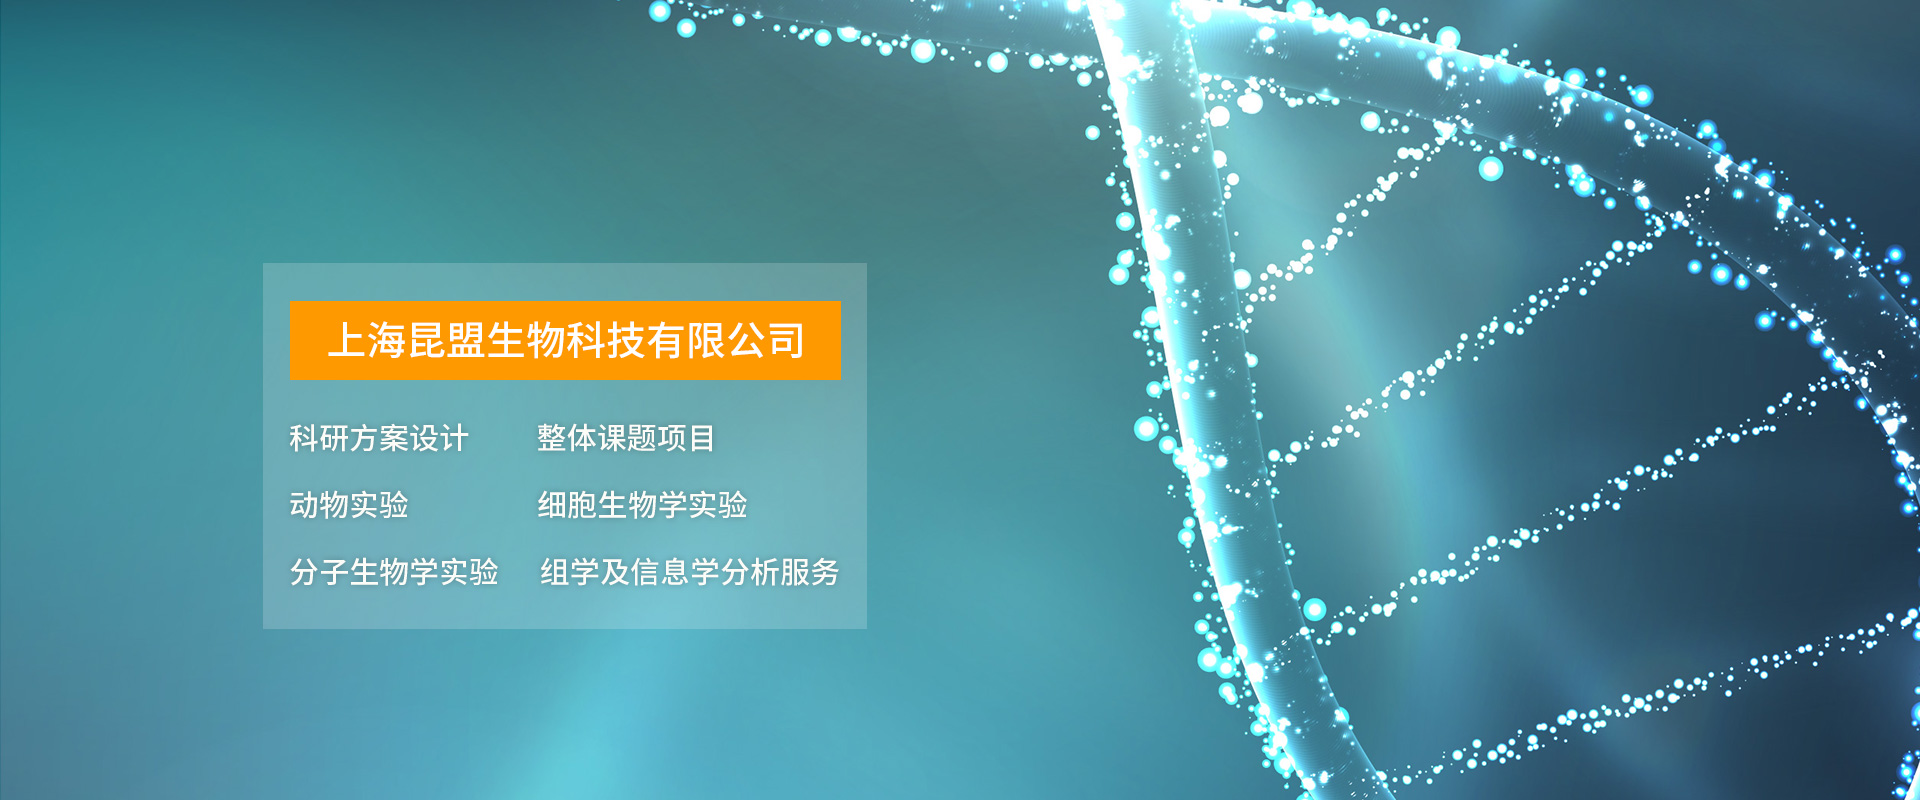 上海昆盟生物科技有限公司